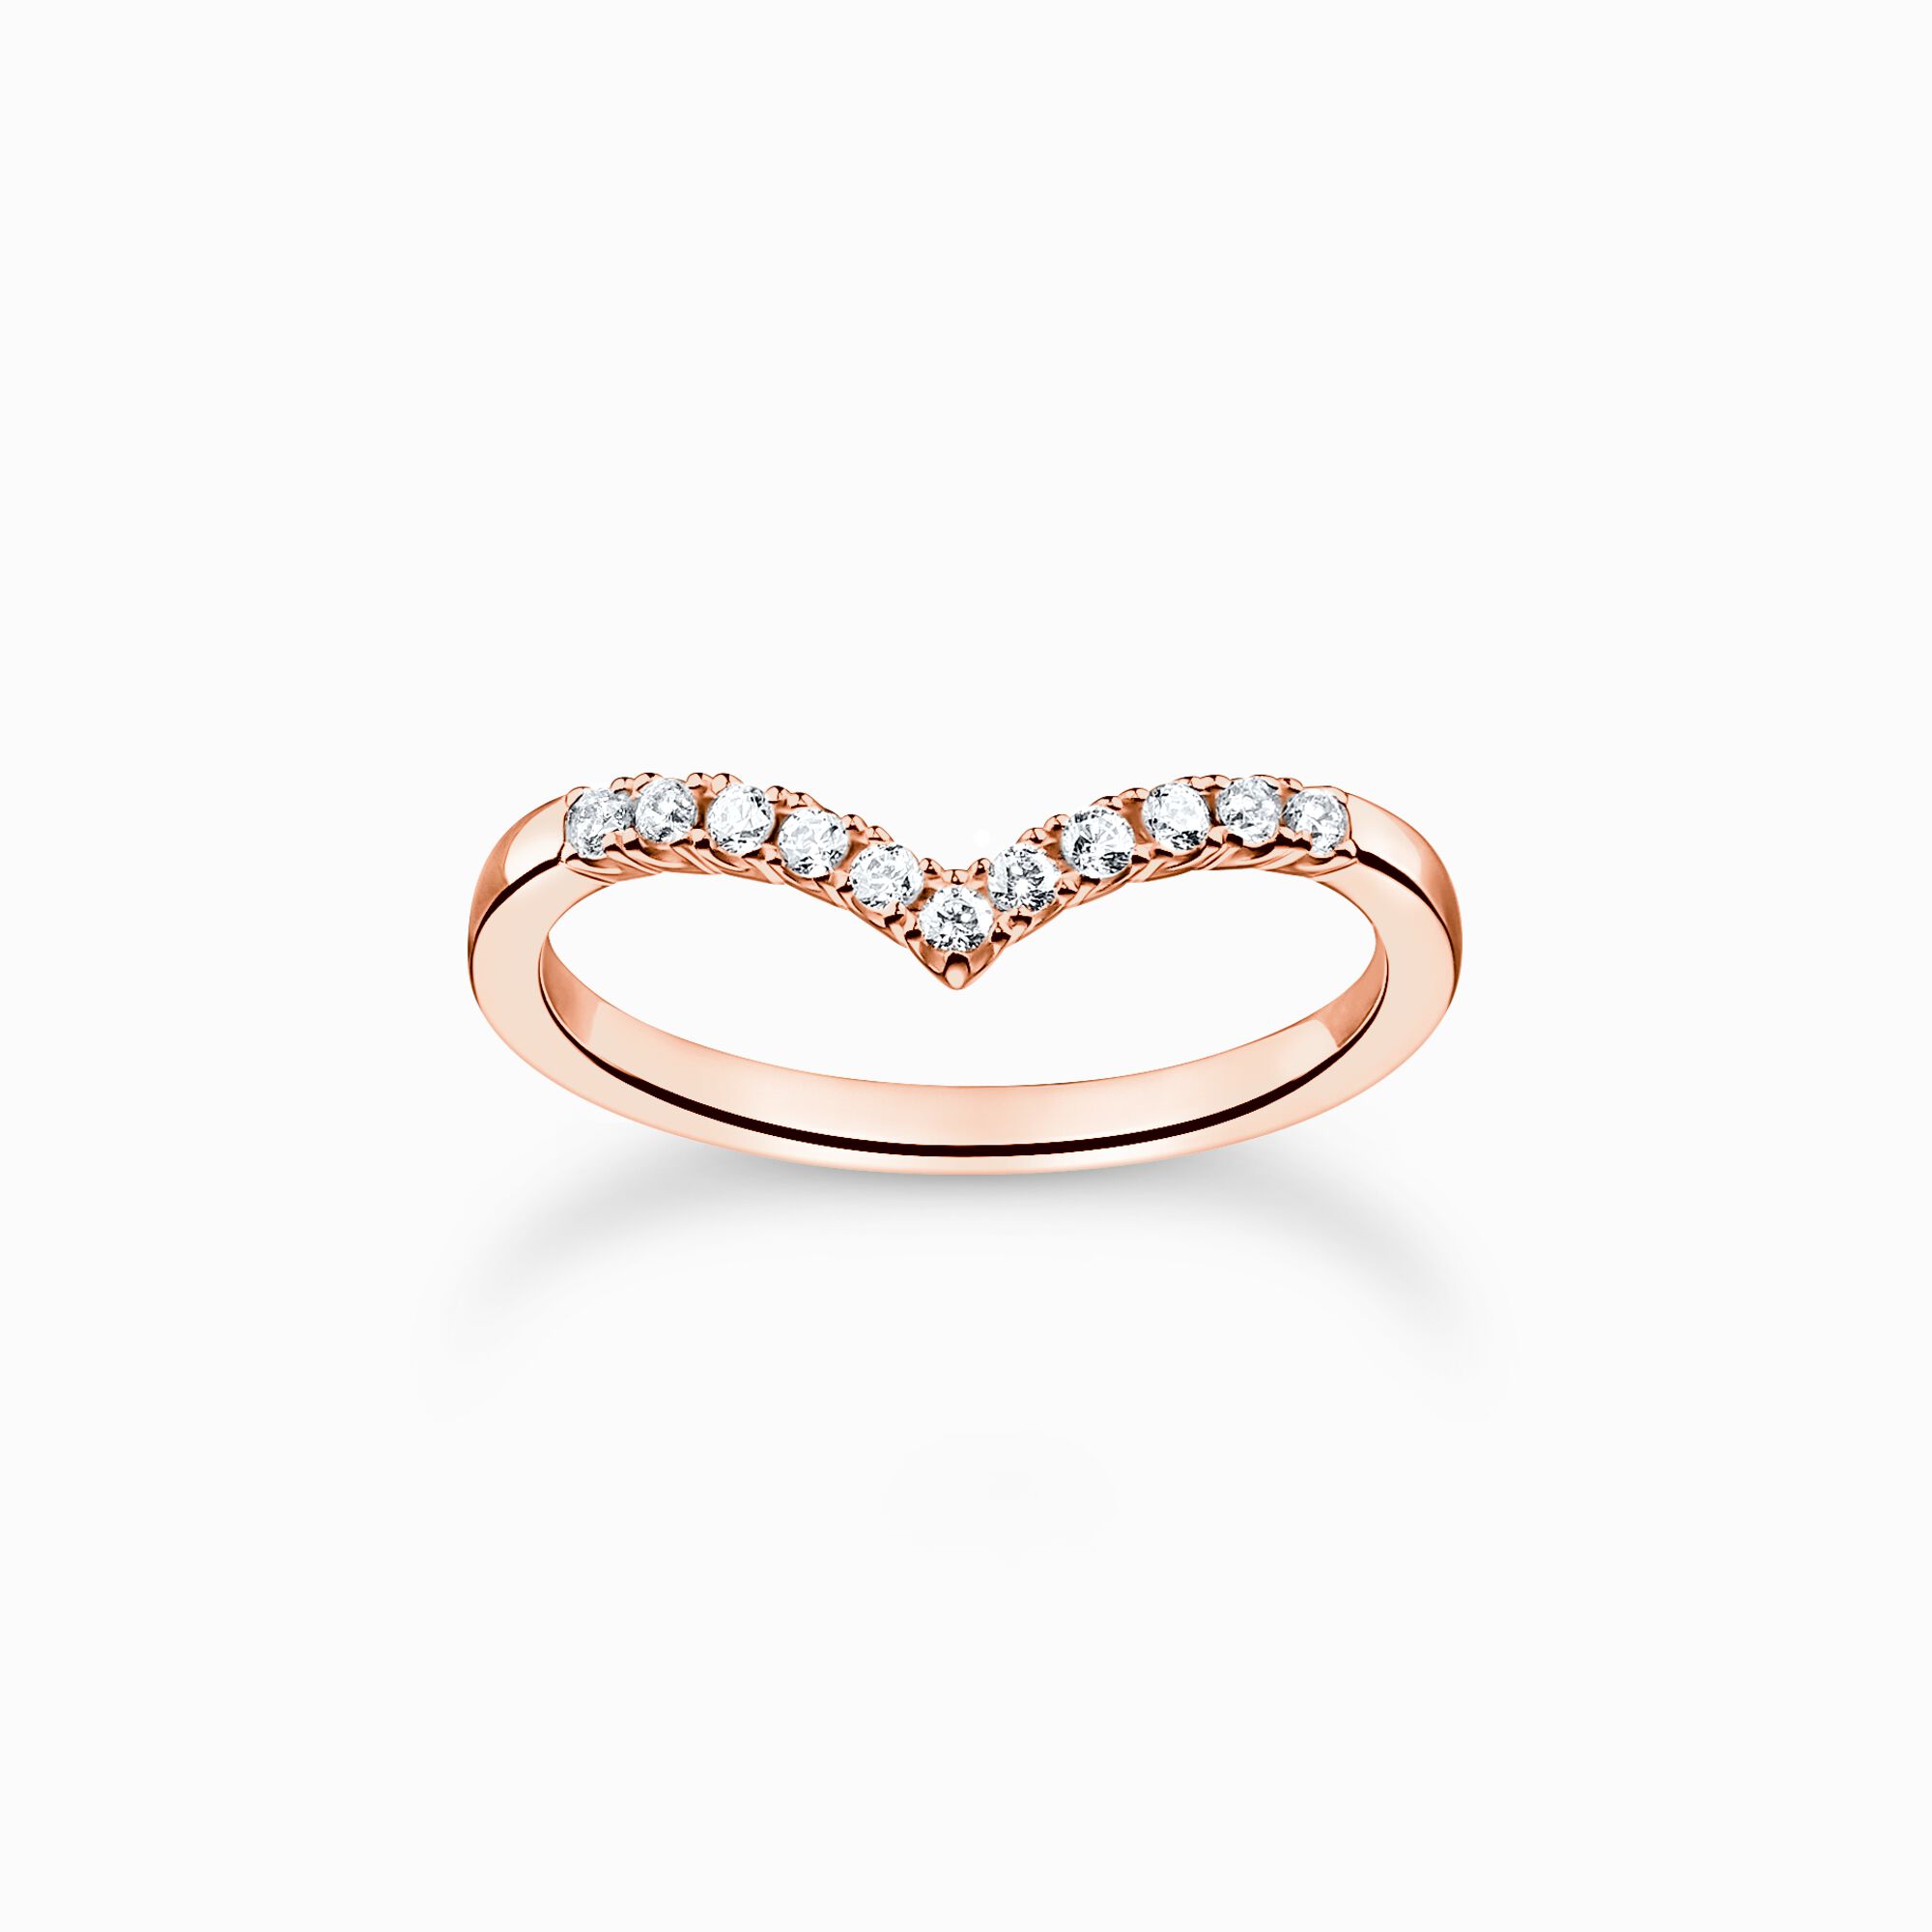 Anillo forma de V con piedras blancas oro rosado de la colección Charming Collection en la tienda online de THOMAS SABO